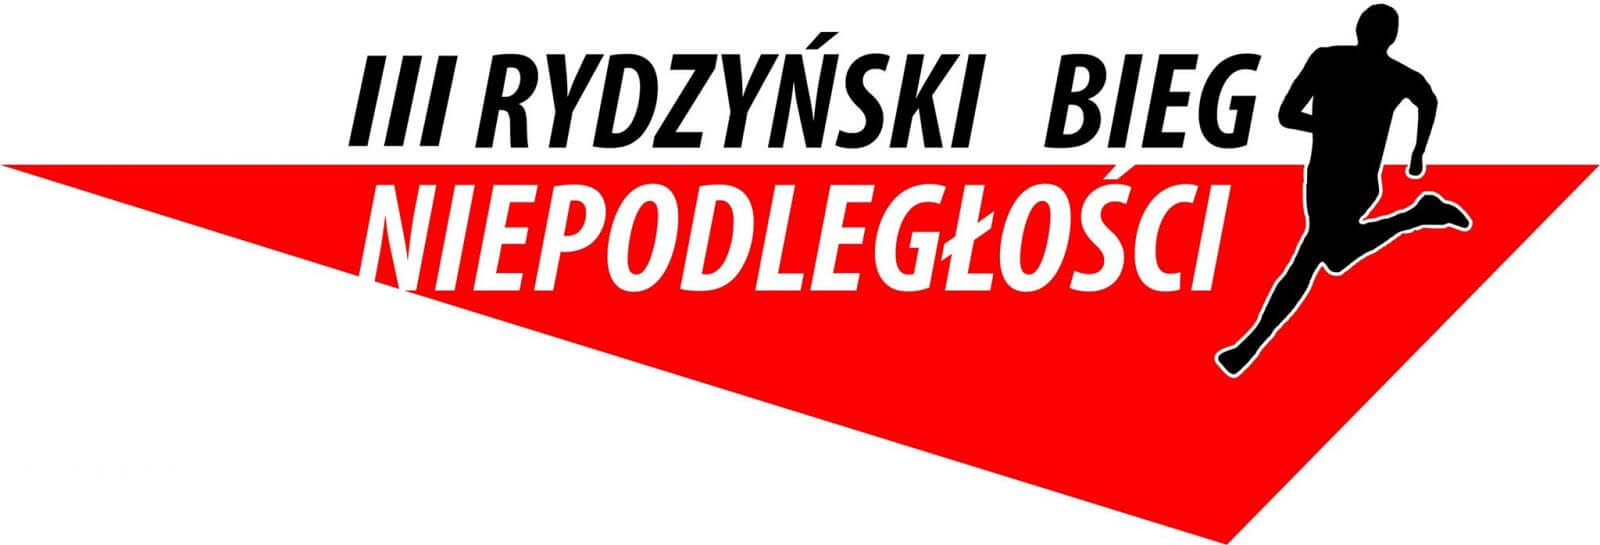 III Rydzyński Bieg Niepodległości